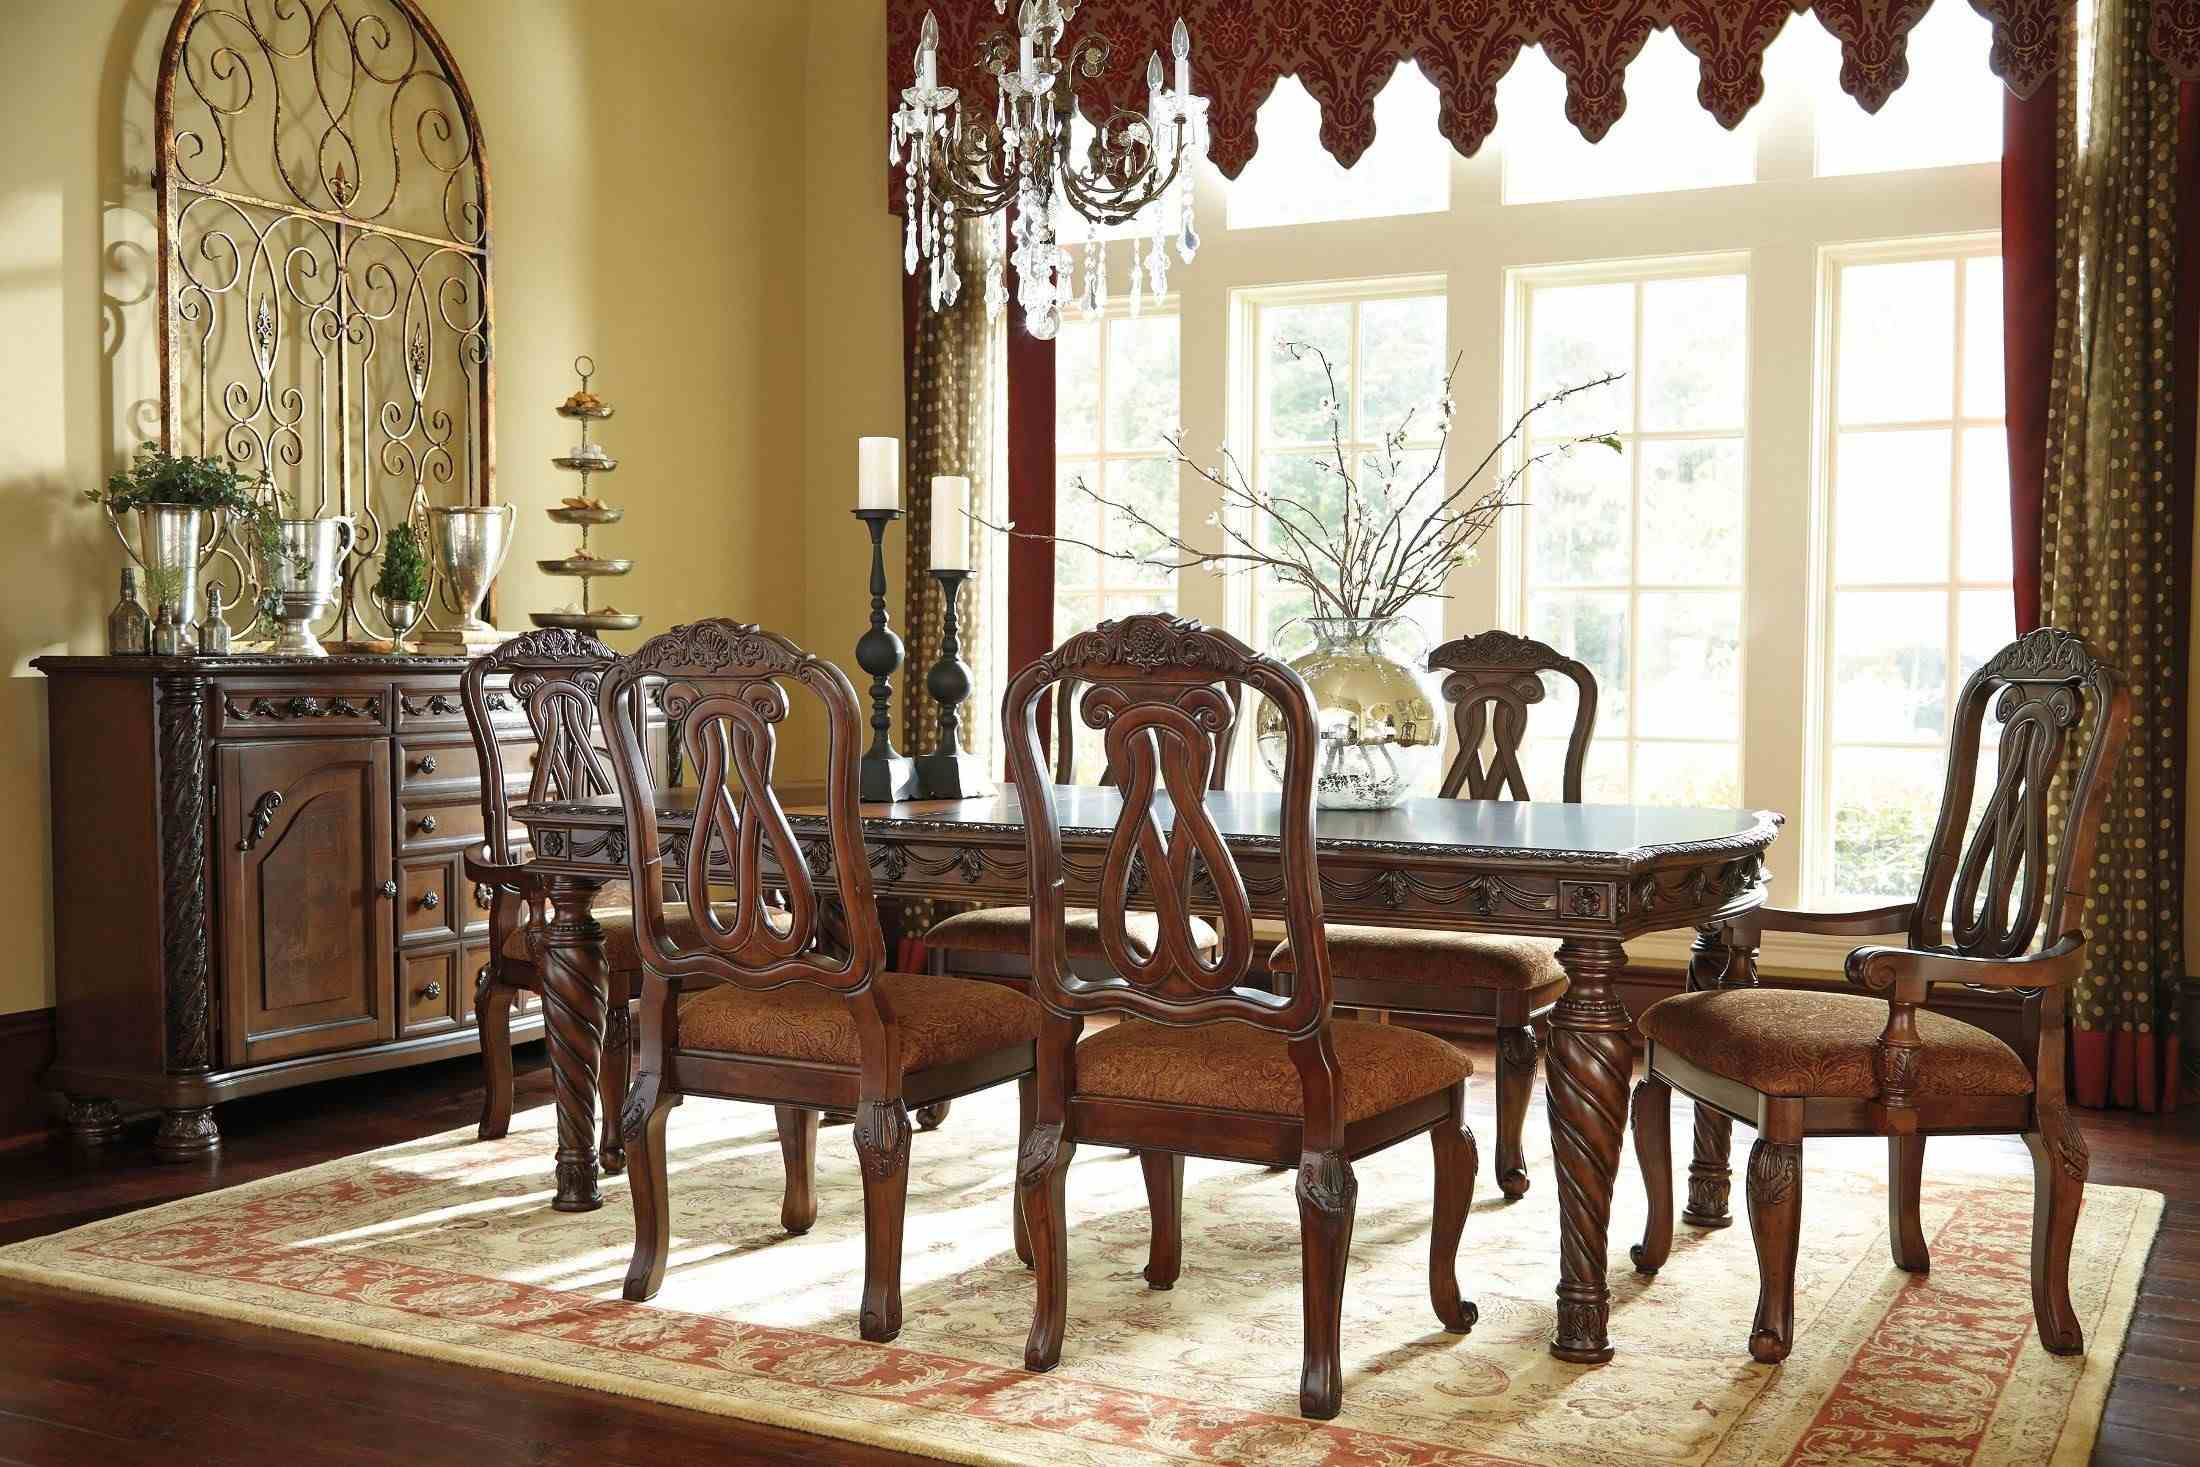 6 dining room chairs kijiji